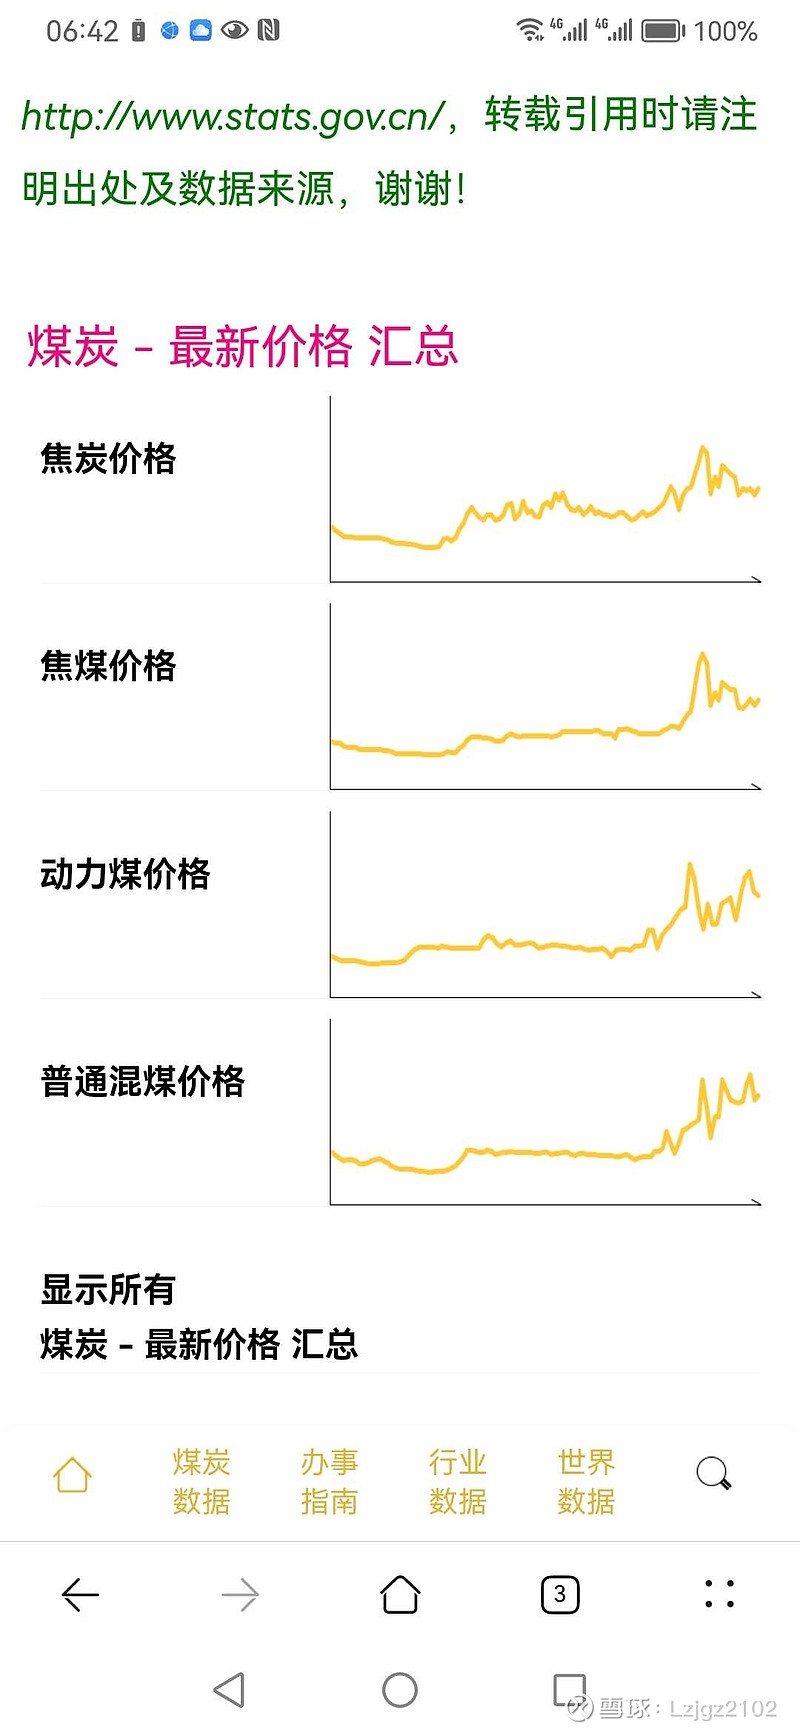 预测一下 上海能源 今年的分红